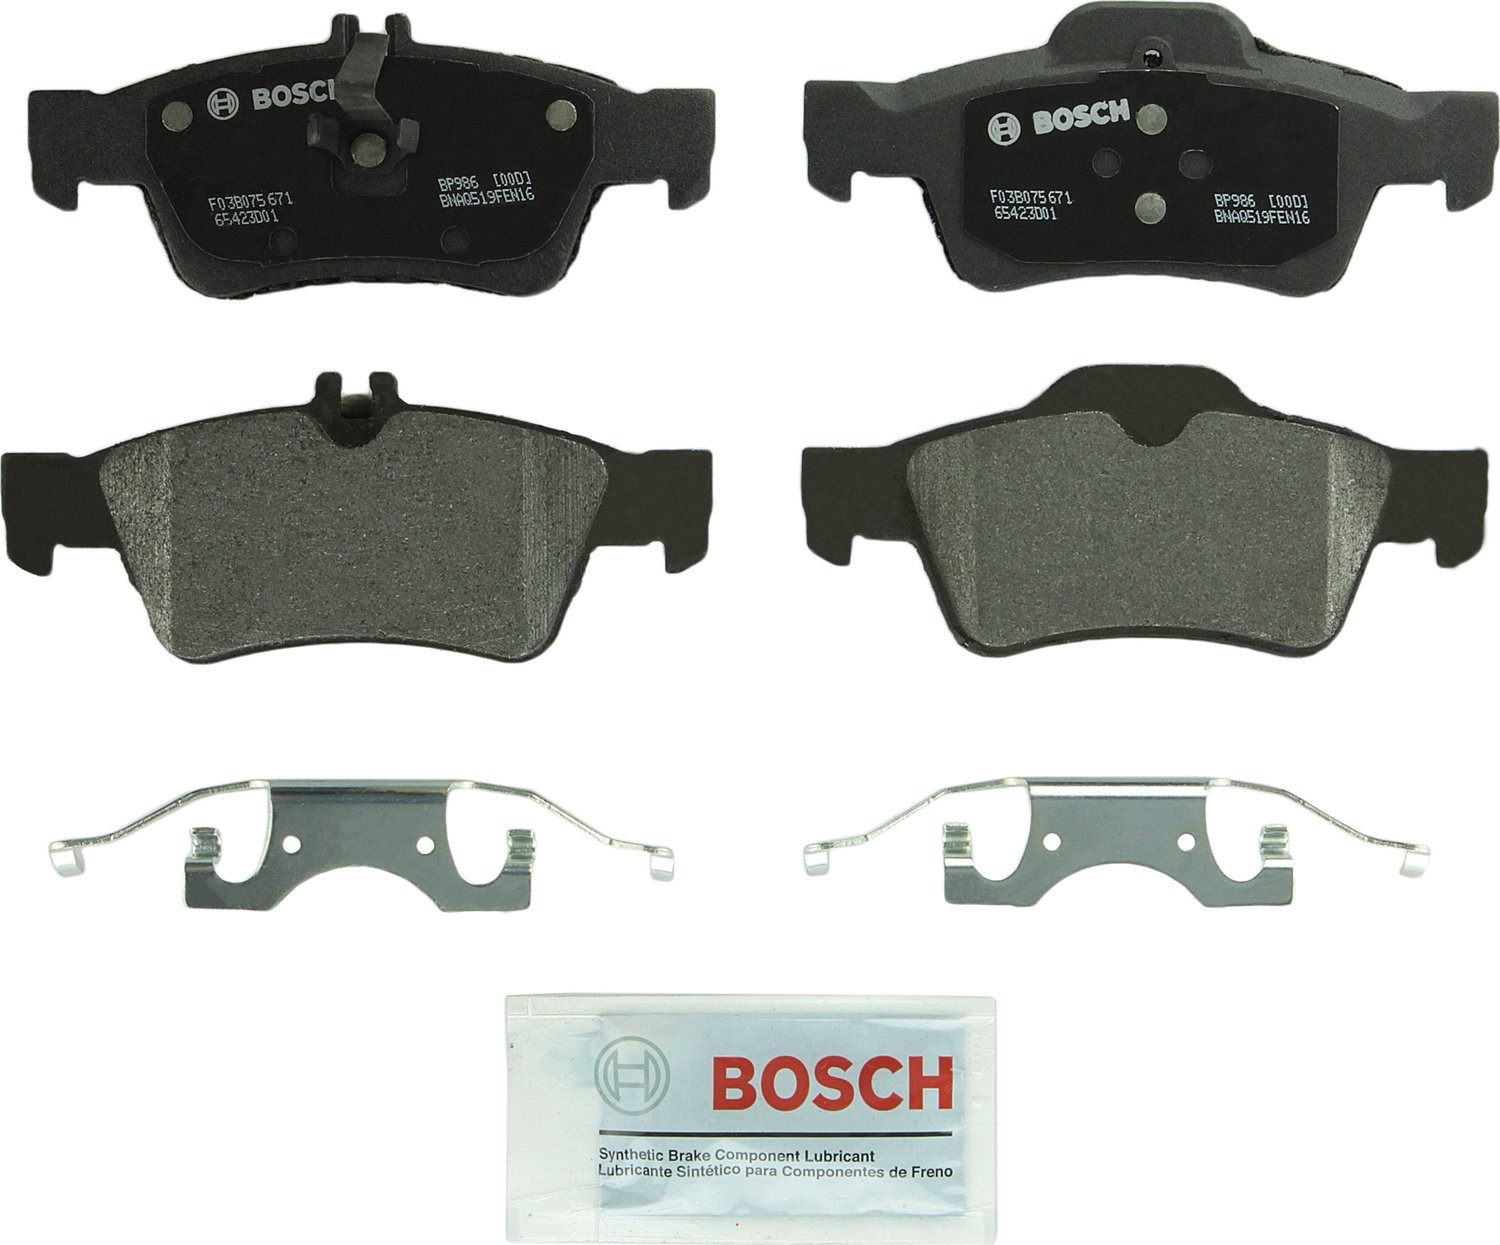 Bosch BP986 QuietCast プレミアム セミメタリック ディスク ブレーキ パッド セット -...